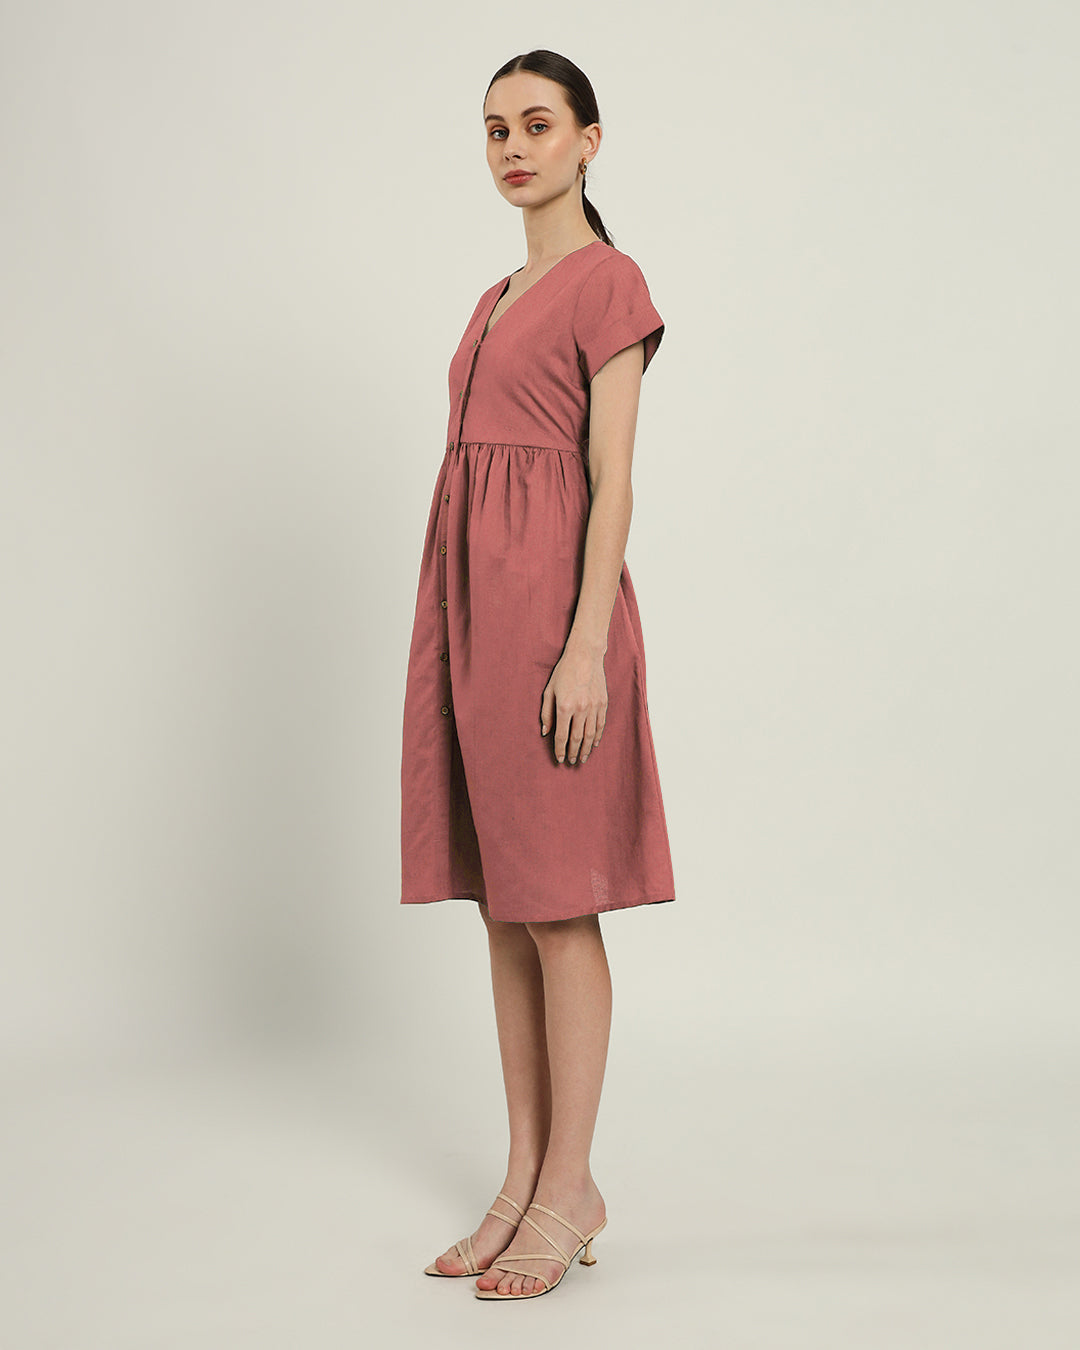 The Valence Ivory Pink Cotton Dress